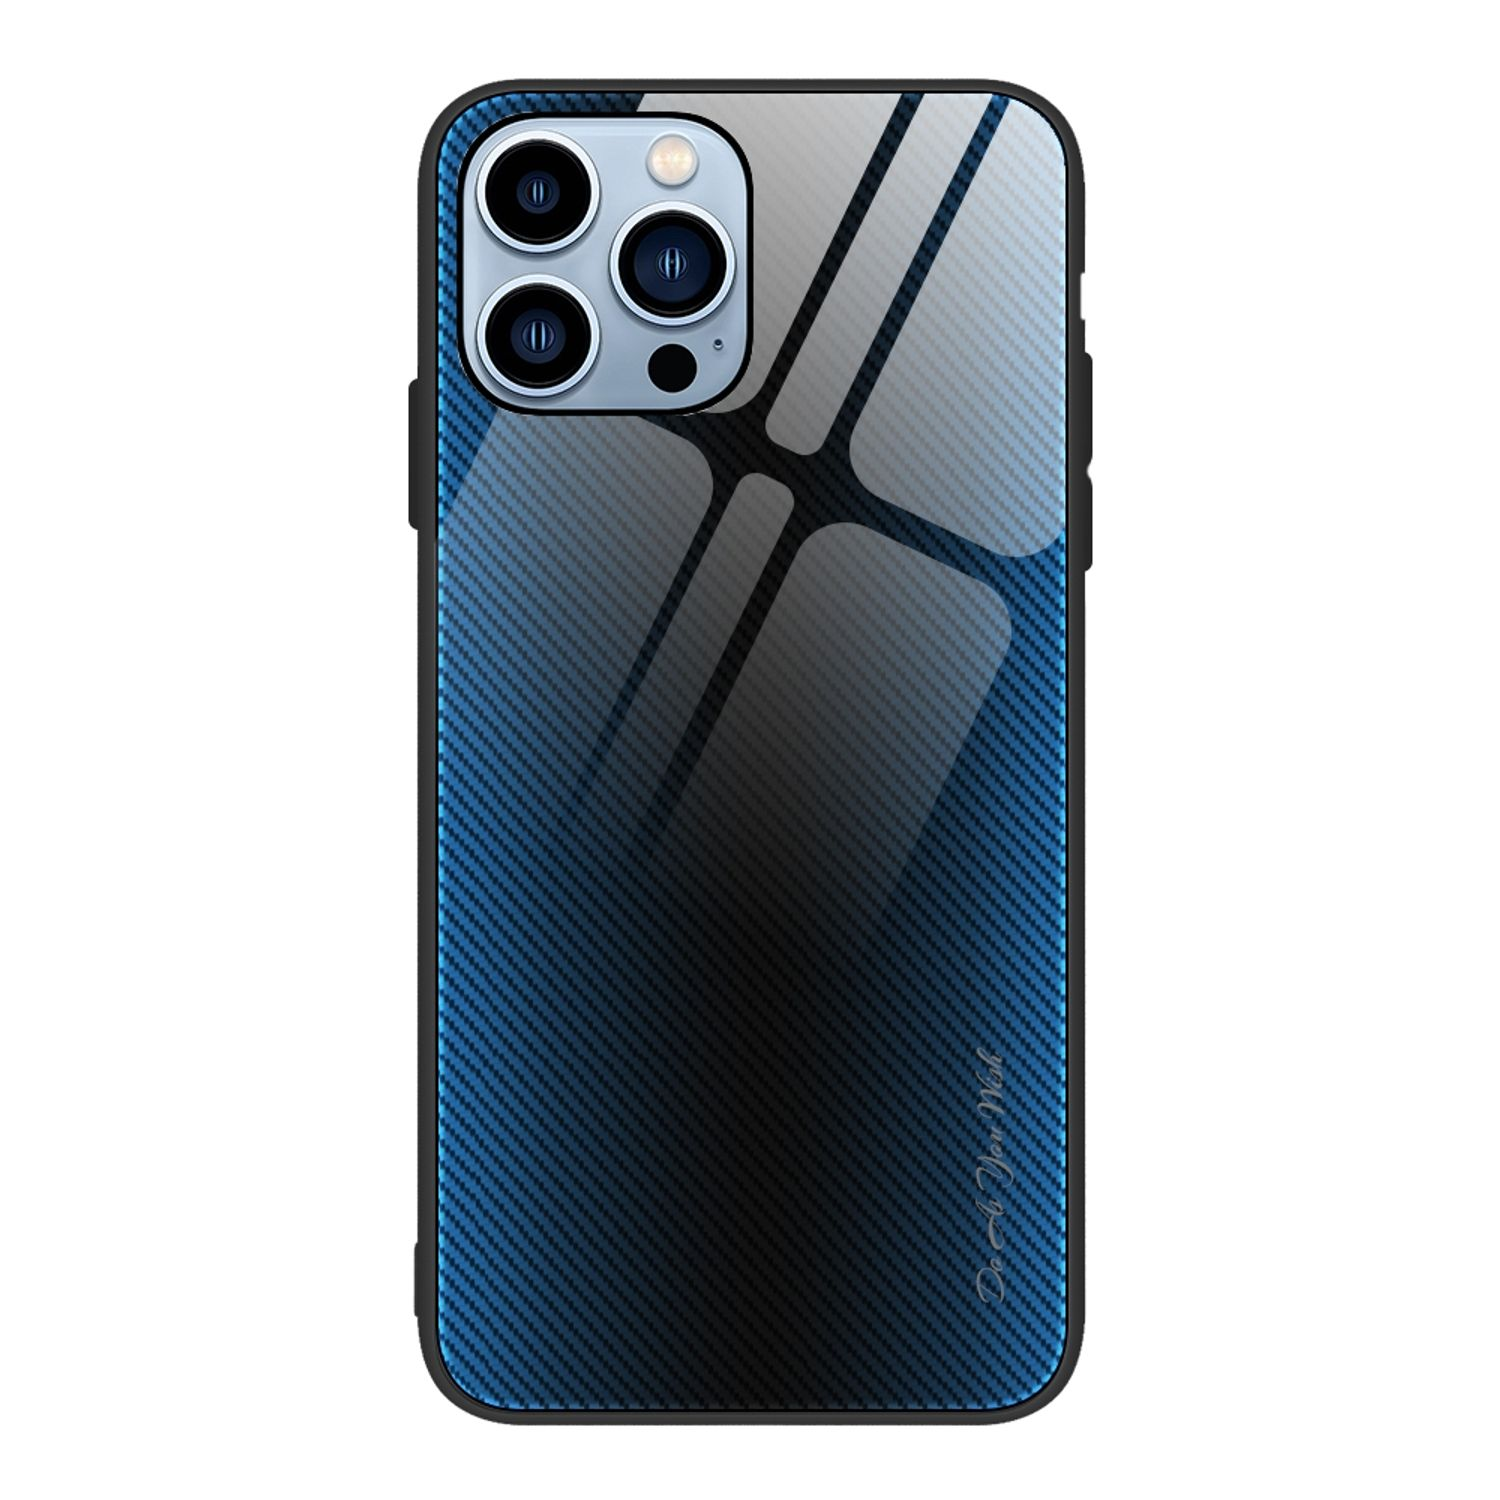 KÖNIG 8 / Backcover, Case, 2020 Blau / iPhone 7 DESIGN SE Apple, 2022, /